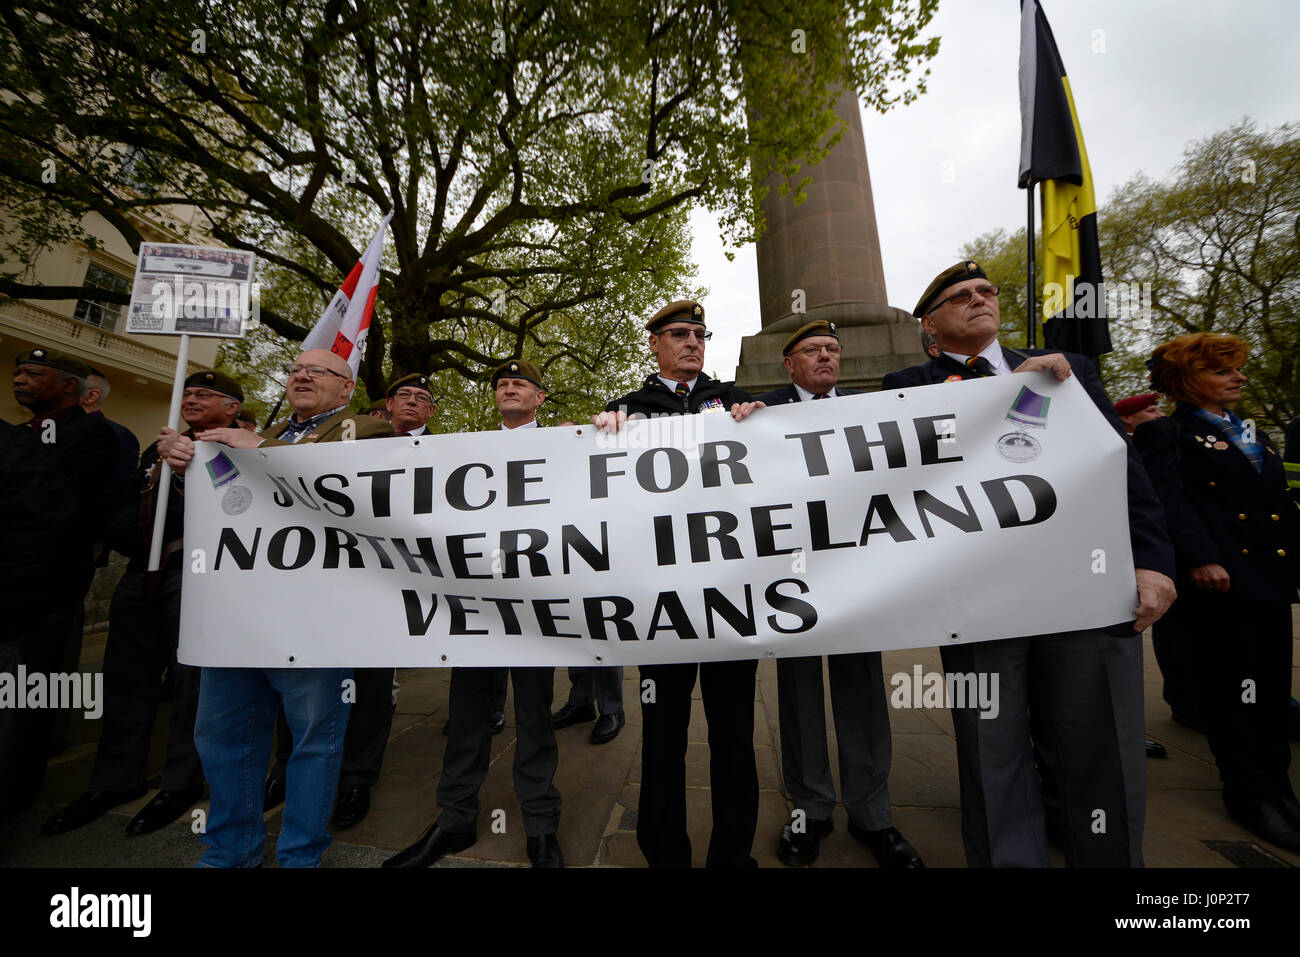 Una stima di 1.000 veterani hanno marciato su Downing Street per protestare contro ciò che crede è il "hounding" dei soldati che hanno servito in Irlanda del Nord. Foto Stock